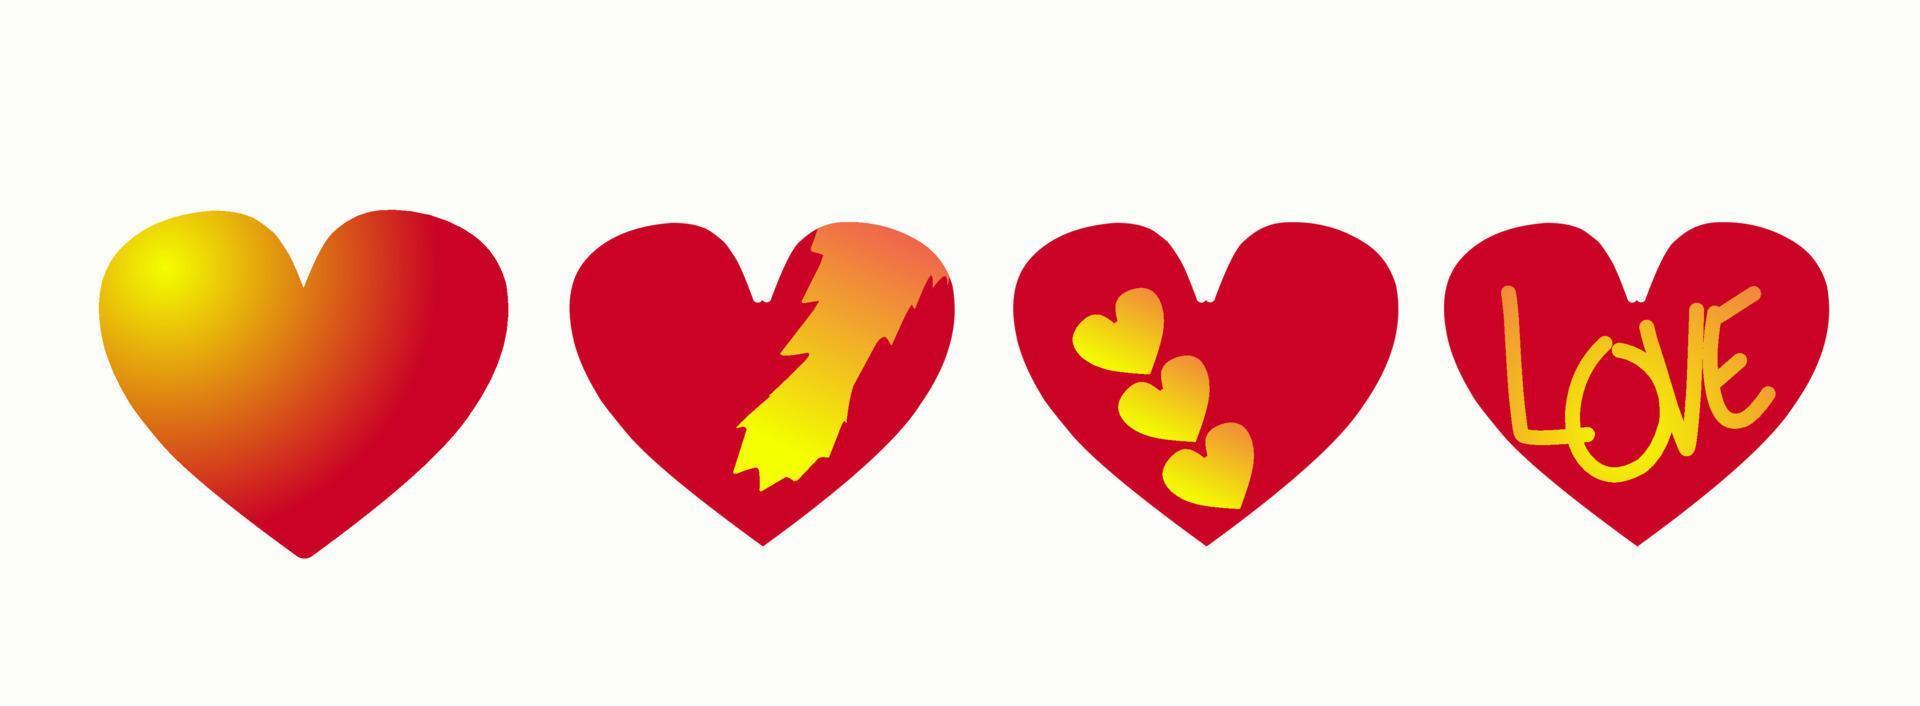 vecteur d'icône de coeur d'amour. illustration créative collection de symboles d'amour romantique. notion d'amour. élément de design pour la saint valentin.